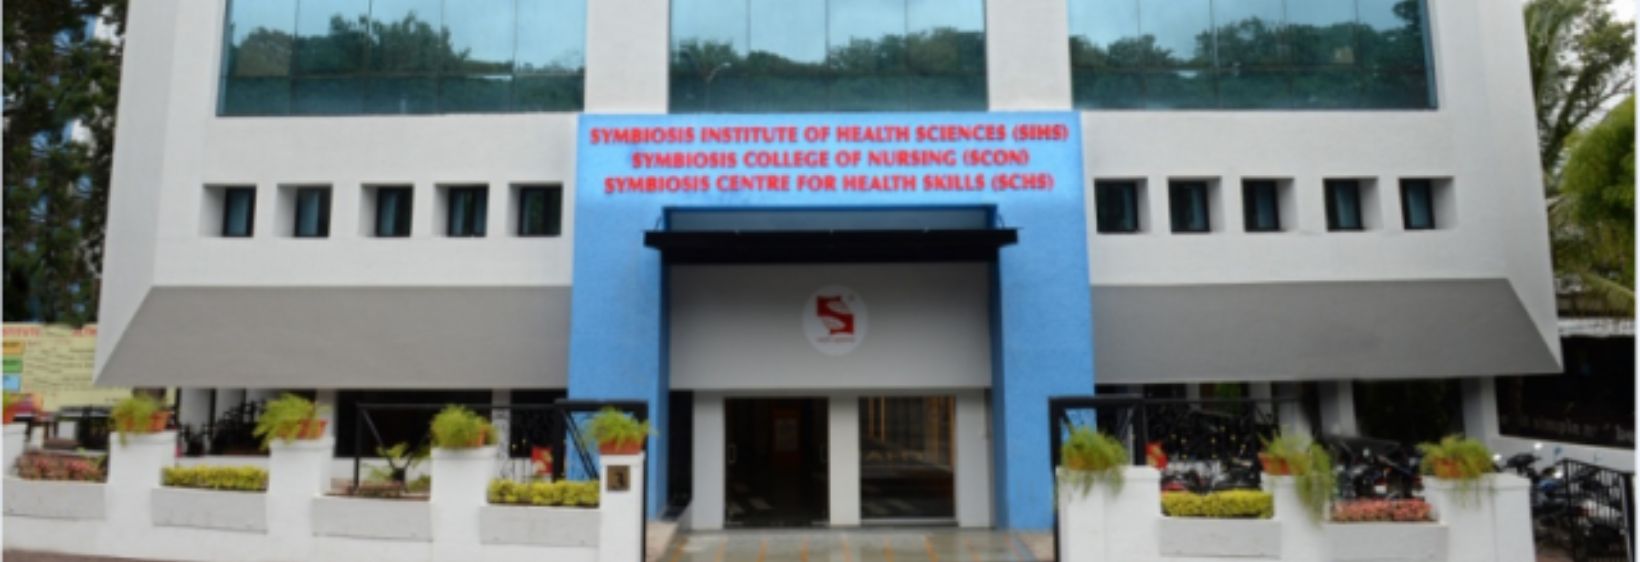 Symbiosis College of Nursing - Pune